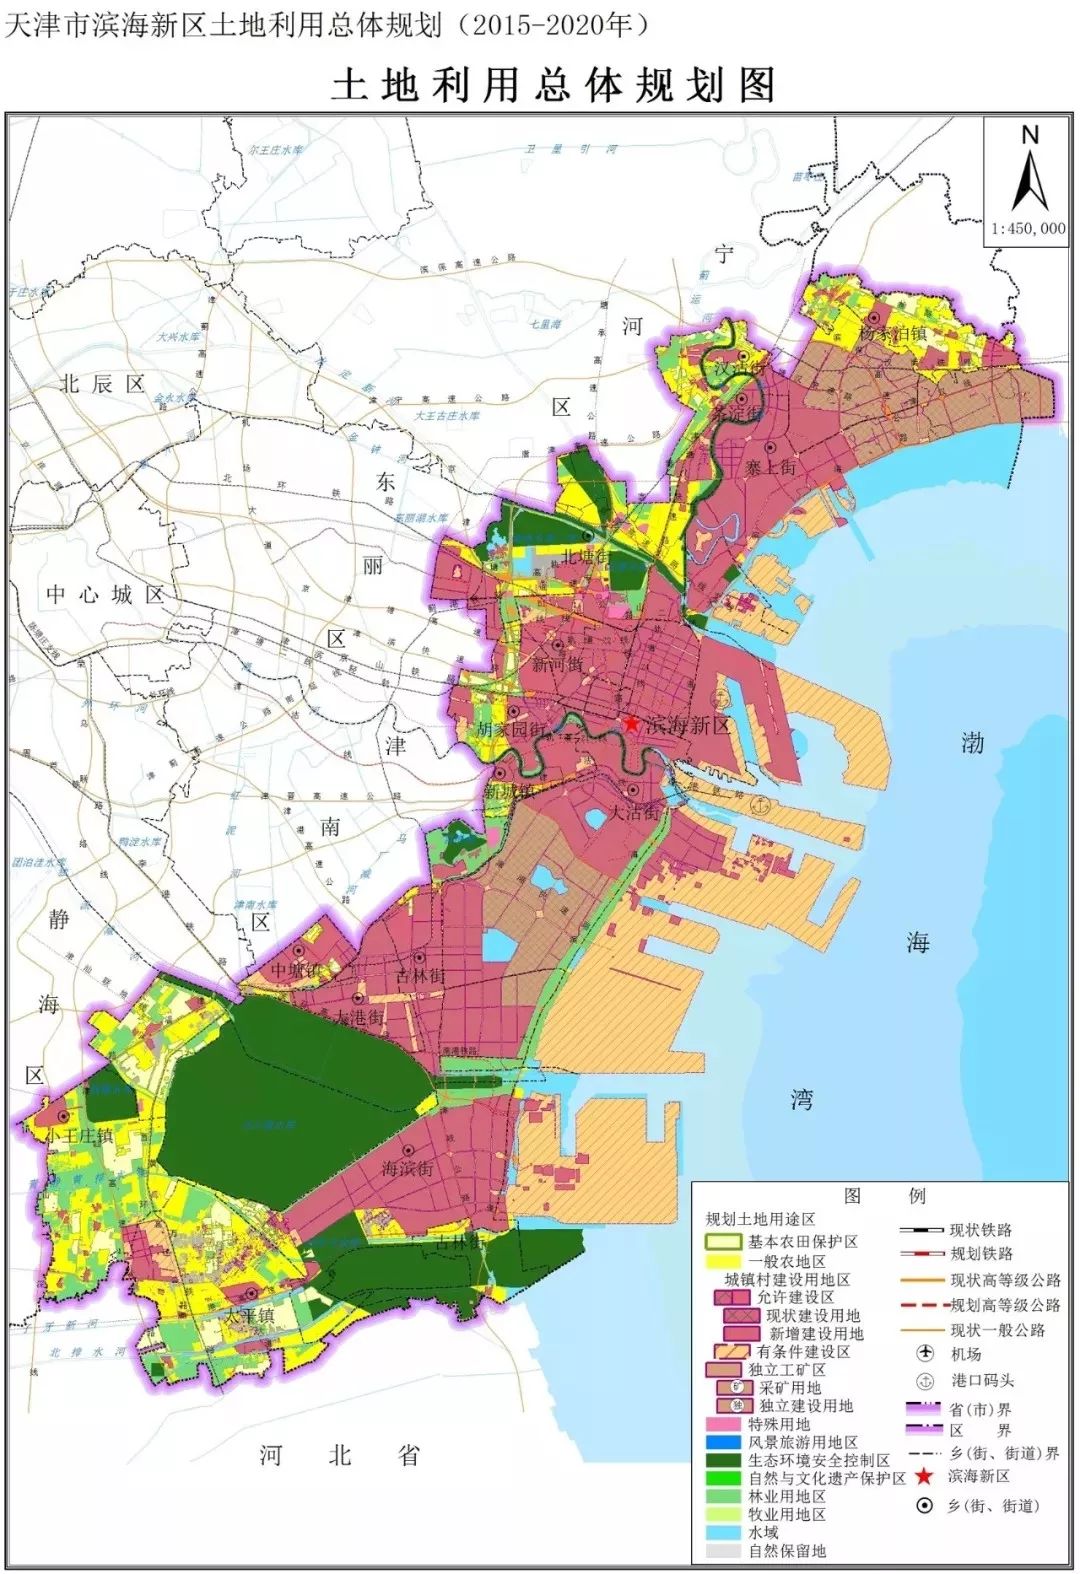 《规划》将滨海新区划分为基本农田保护区,生态环境安全控制区,城镇村